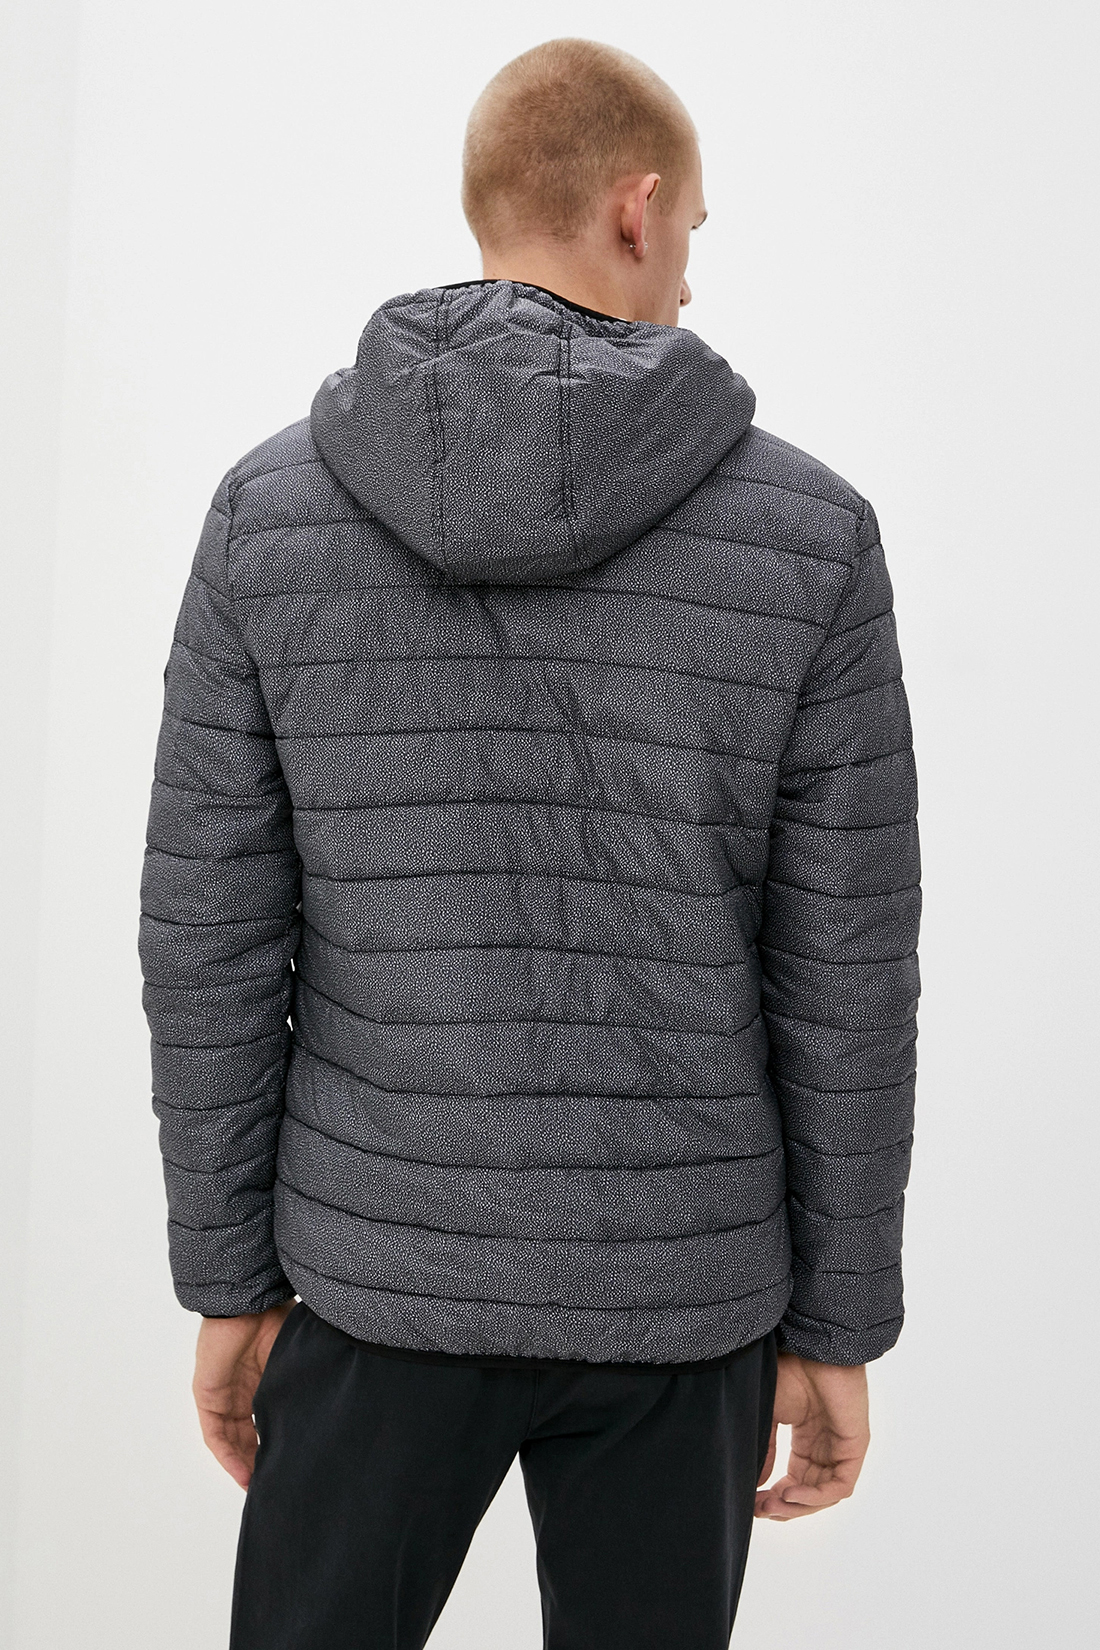 Куртка (Эко пух) (арт. baon B540519), размер M, цвет asphalt printed#серый Куртка (Эко пух) (арт. baon B540519) - фото 2